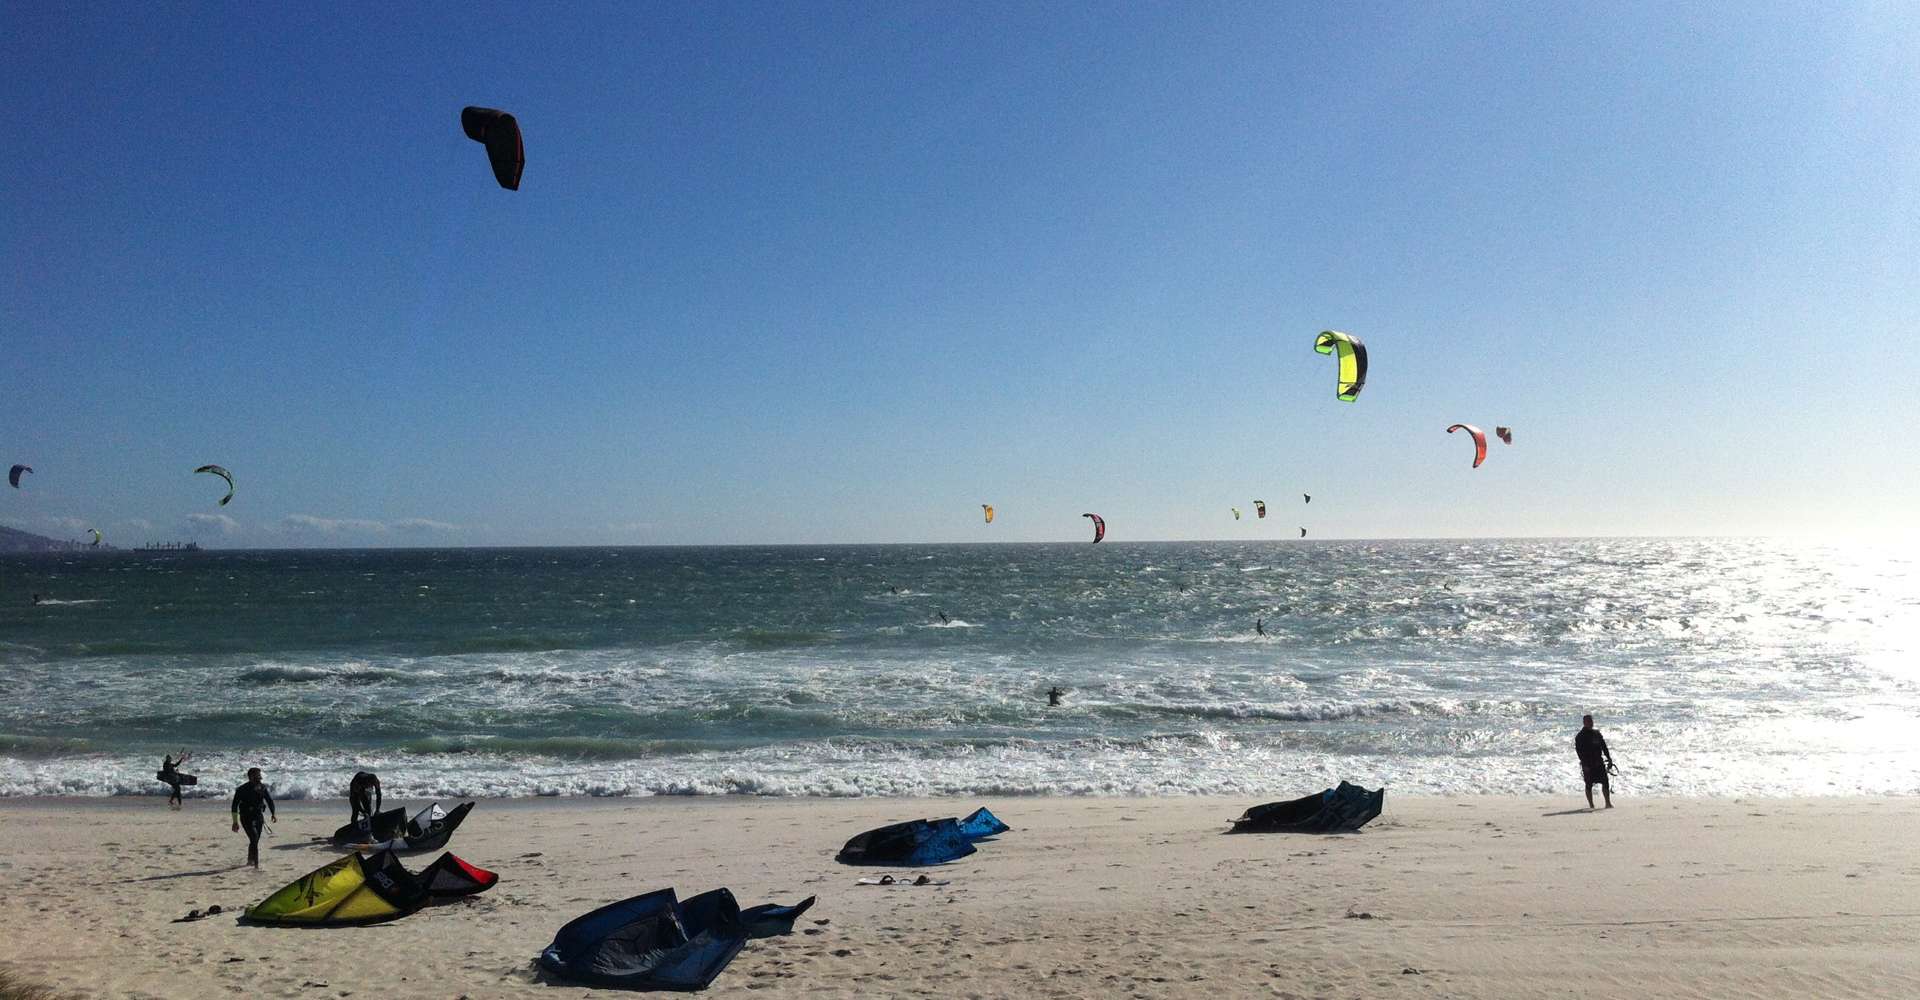 Mehrere kitesurfer am Strand - kitesurfer at beach